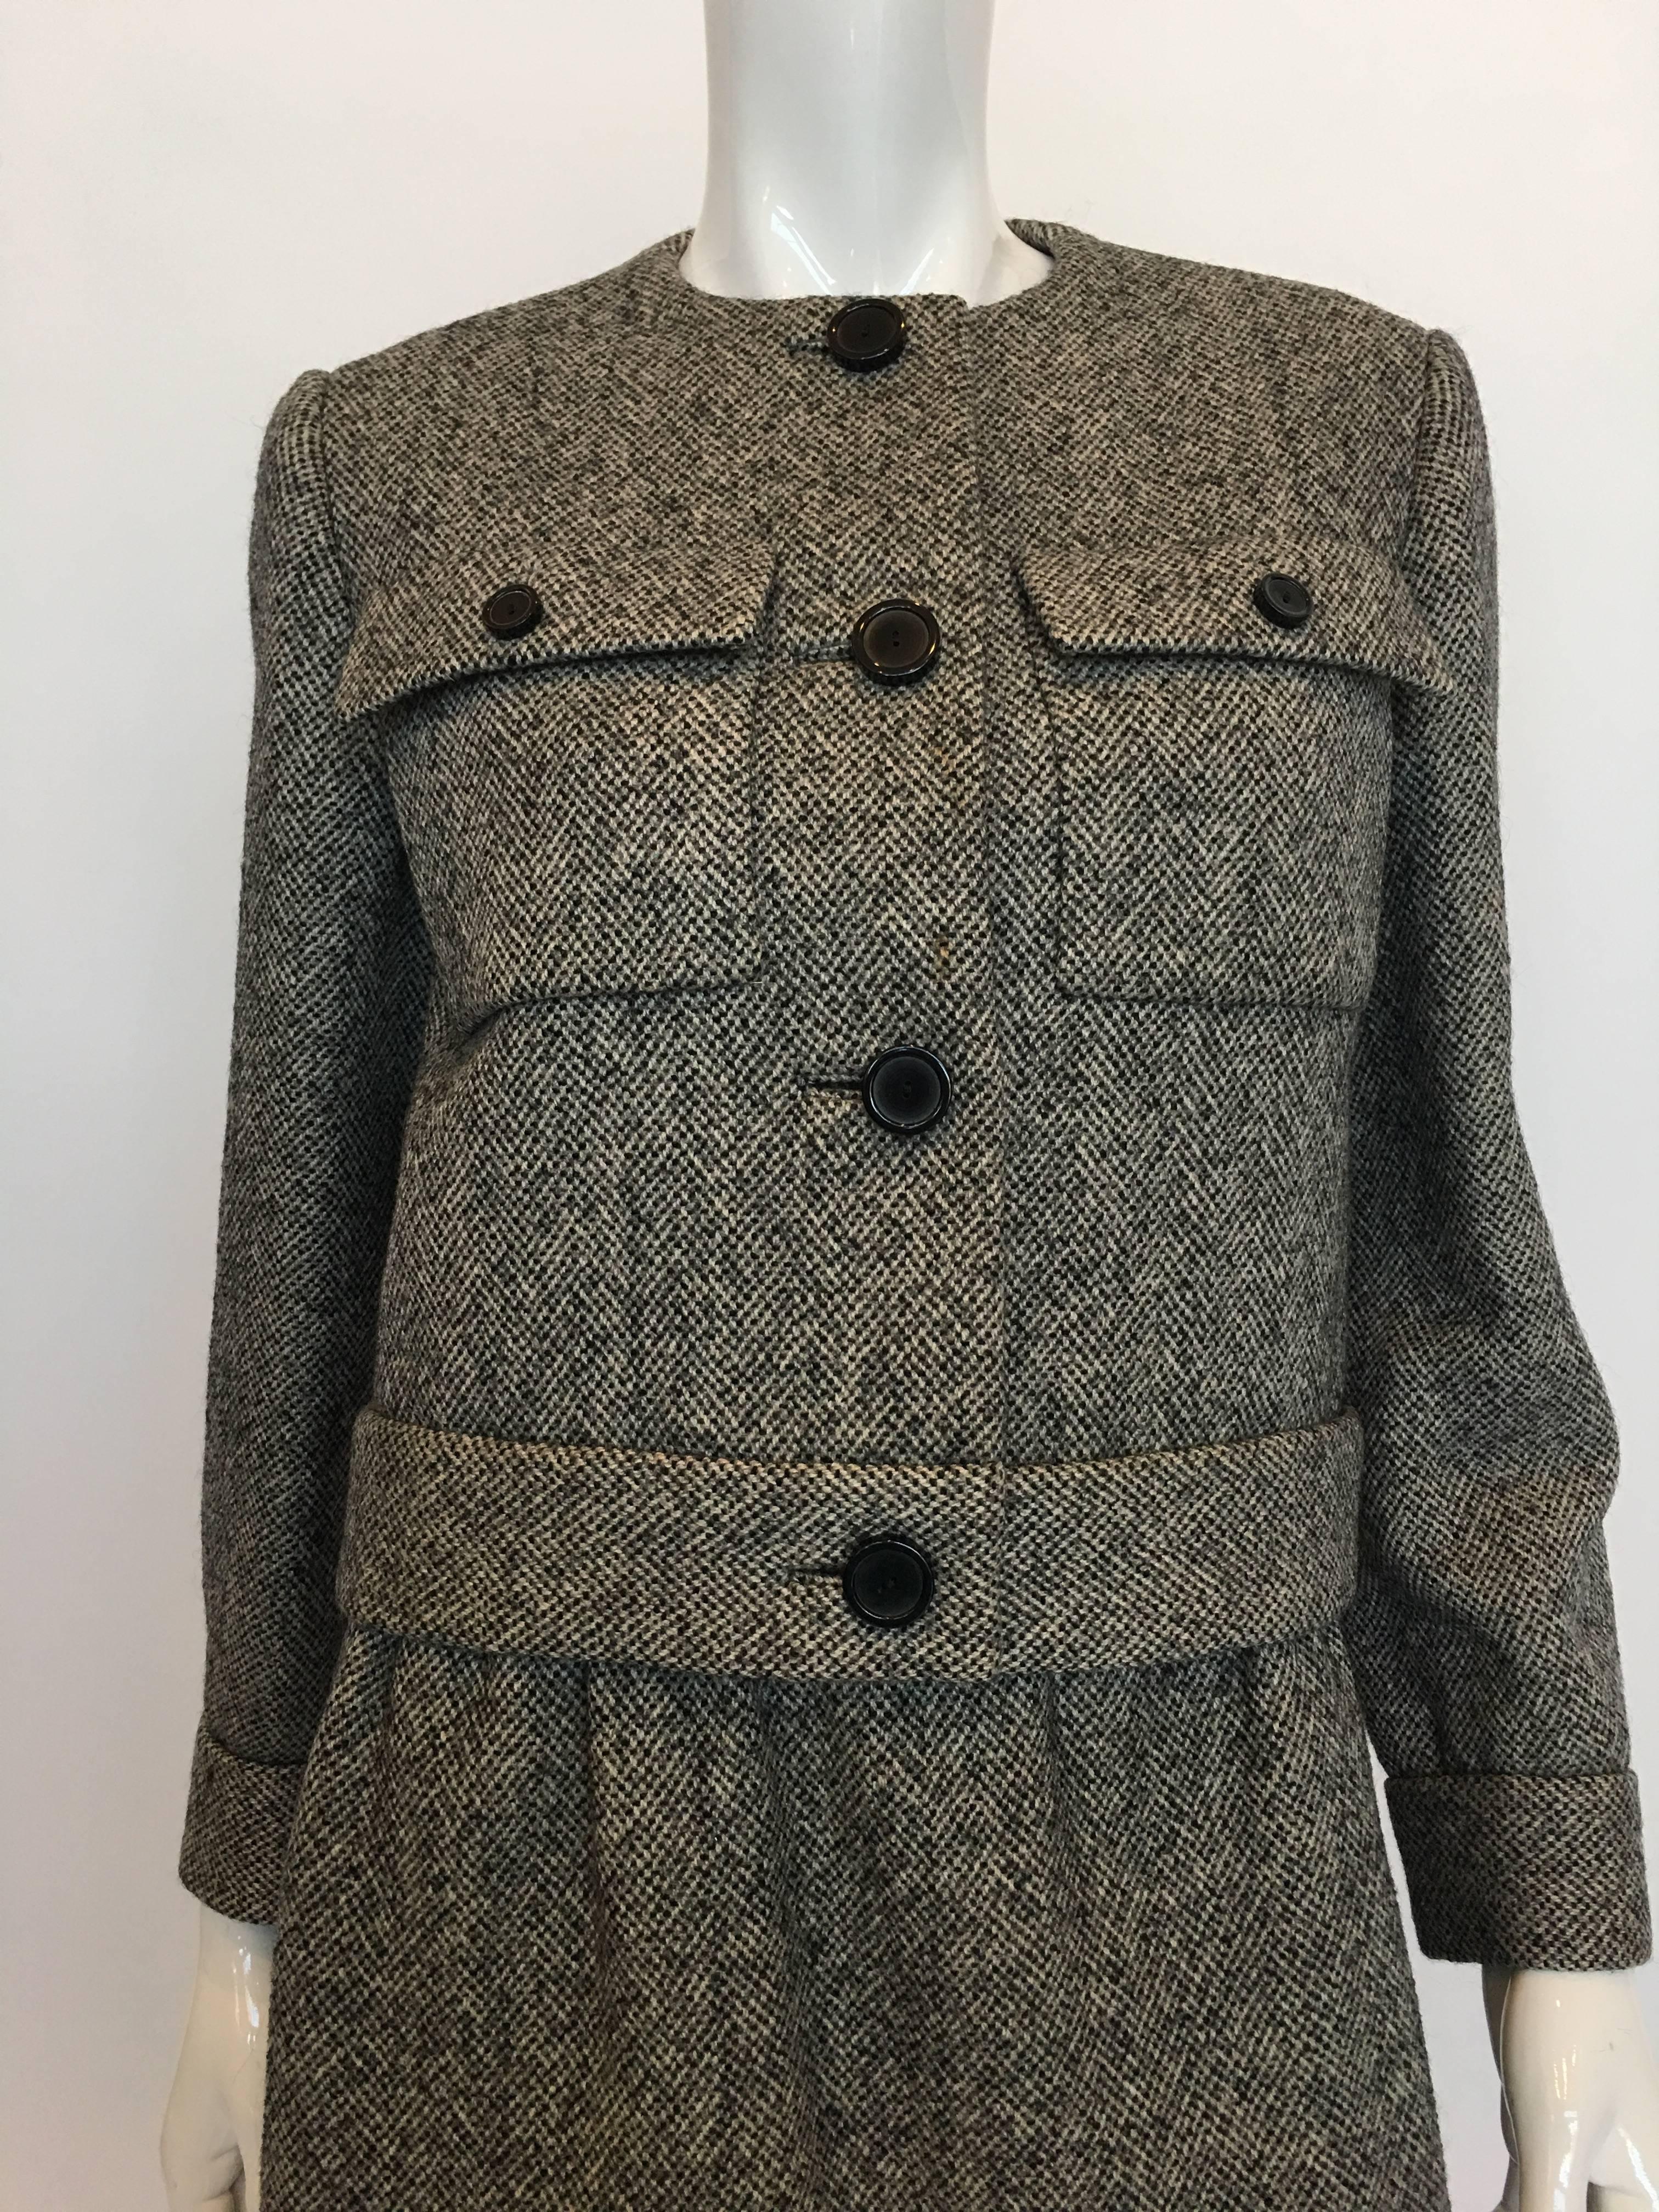 Norell Vintage 1960's Tweed Rock Anzug mit eingefügten Knopflöchern und 2 aufgesetzten Taschen vorne. Der Rock ist gefüttert und hat einen Seitenschlitz mit Hakenverschluss.

*ALLE MASSE SIND FLACH*

Jacke
Schulter bis Schulter: 15.5